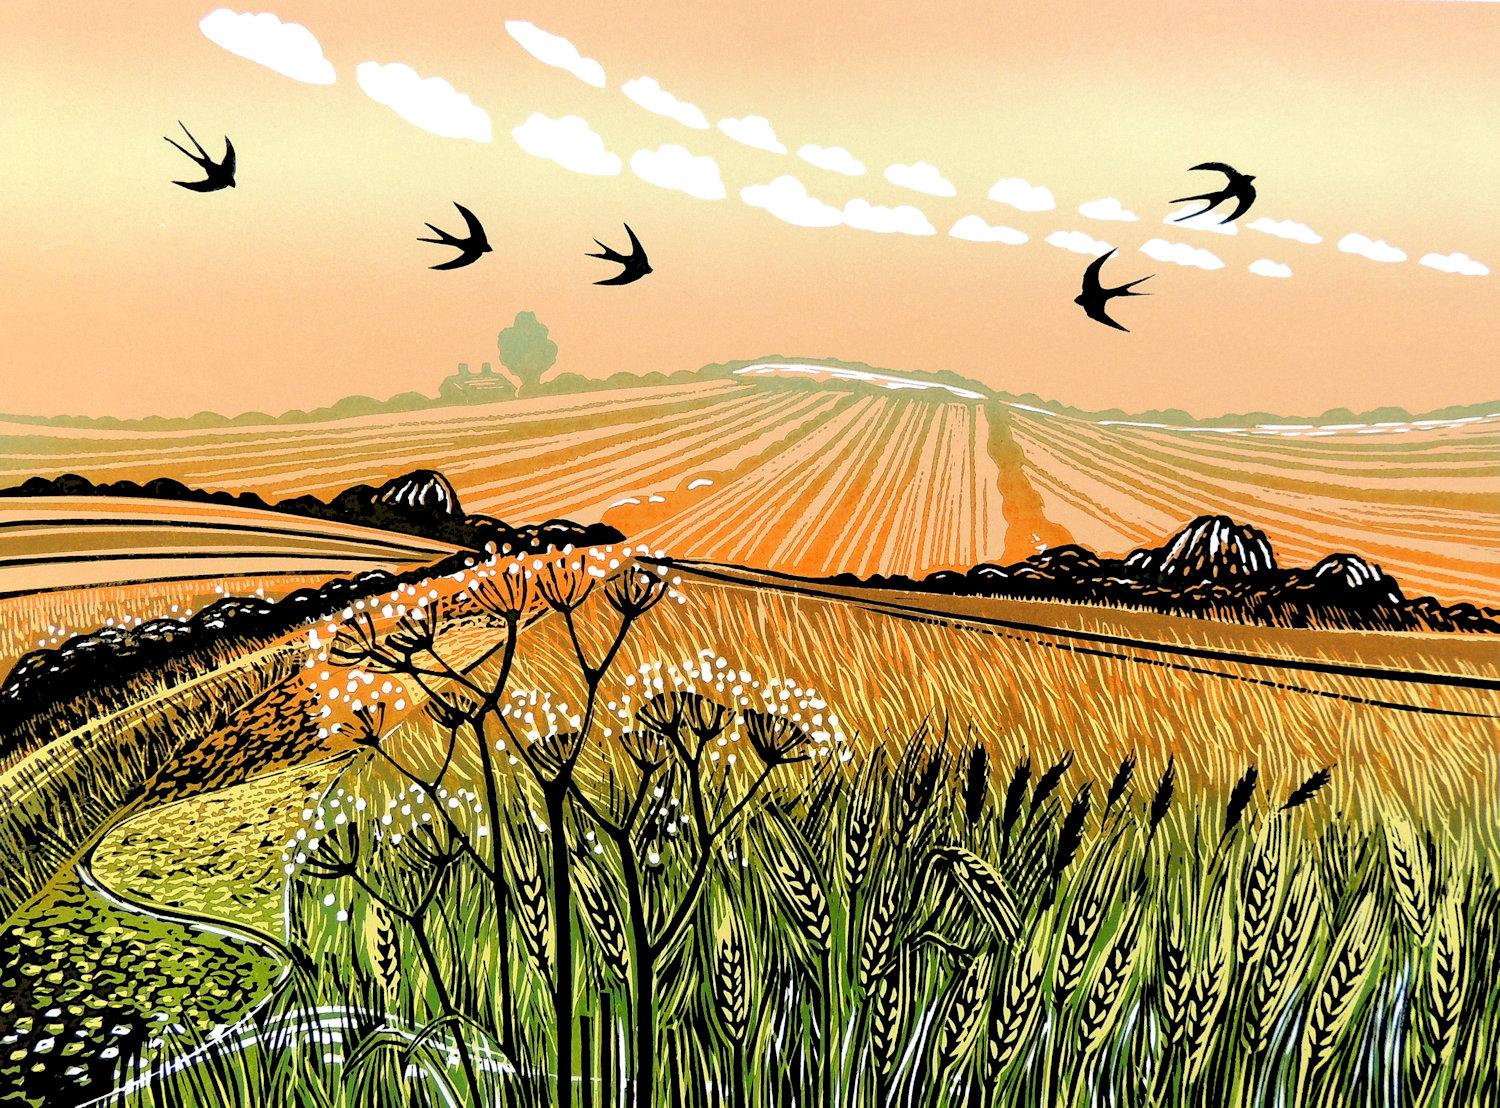 Animal Print Rob Barnes - Swallows in Summer, gravure de Linocut montée, Art de paysage, Nature, Oiseaux